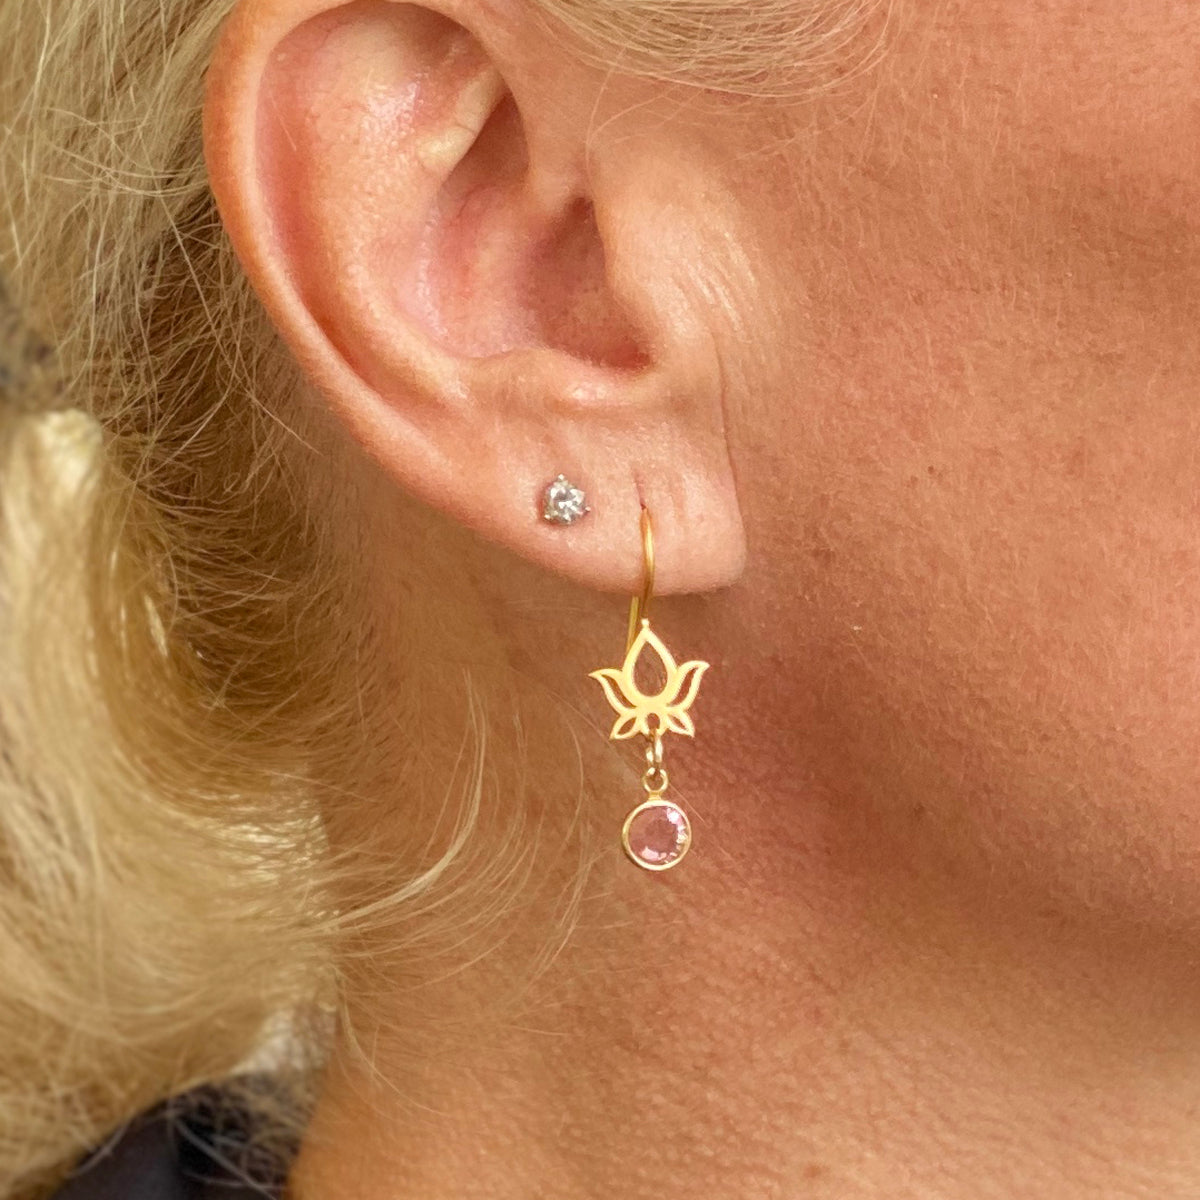 Lotus Flower Earrings with Swarowski Crystal